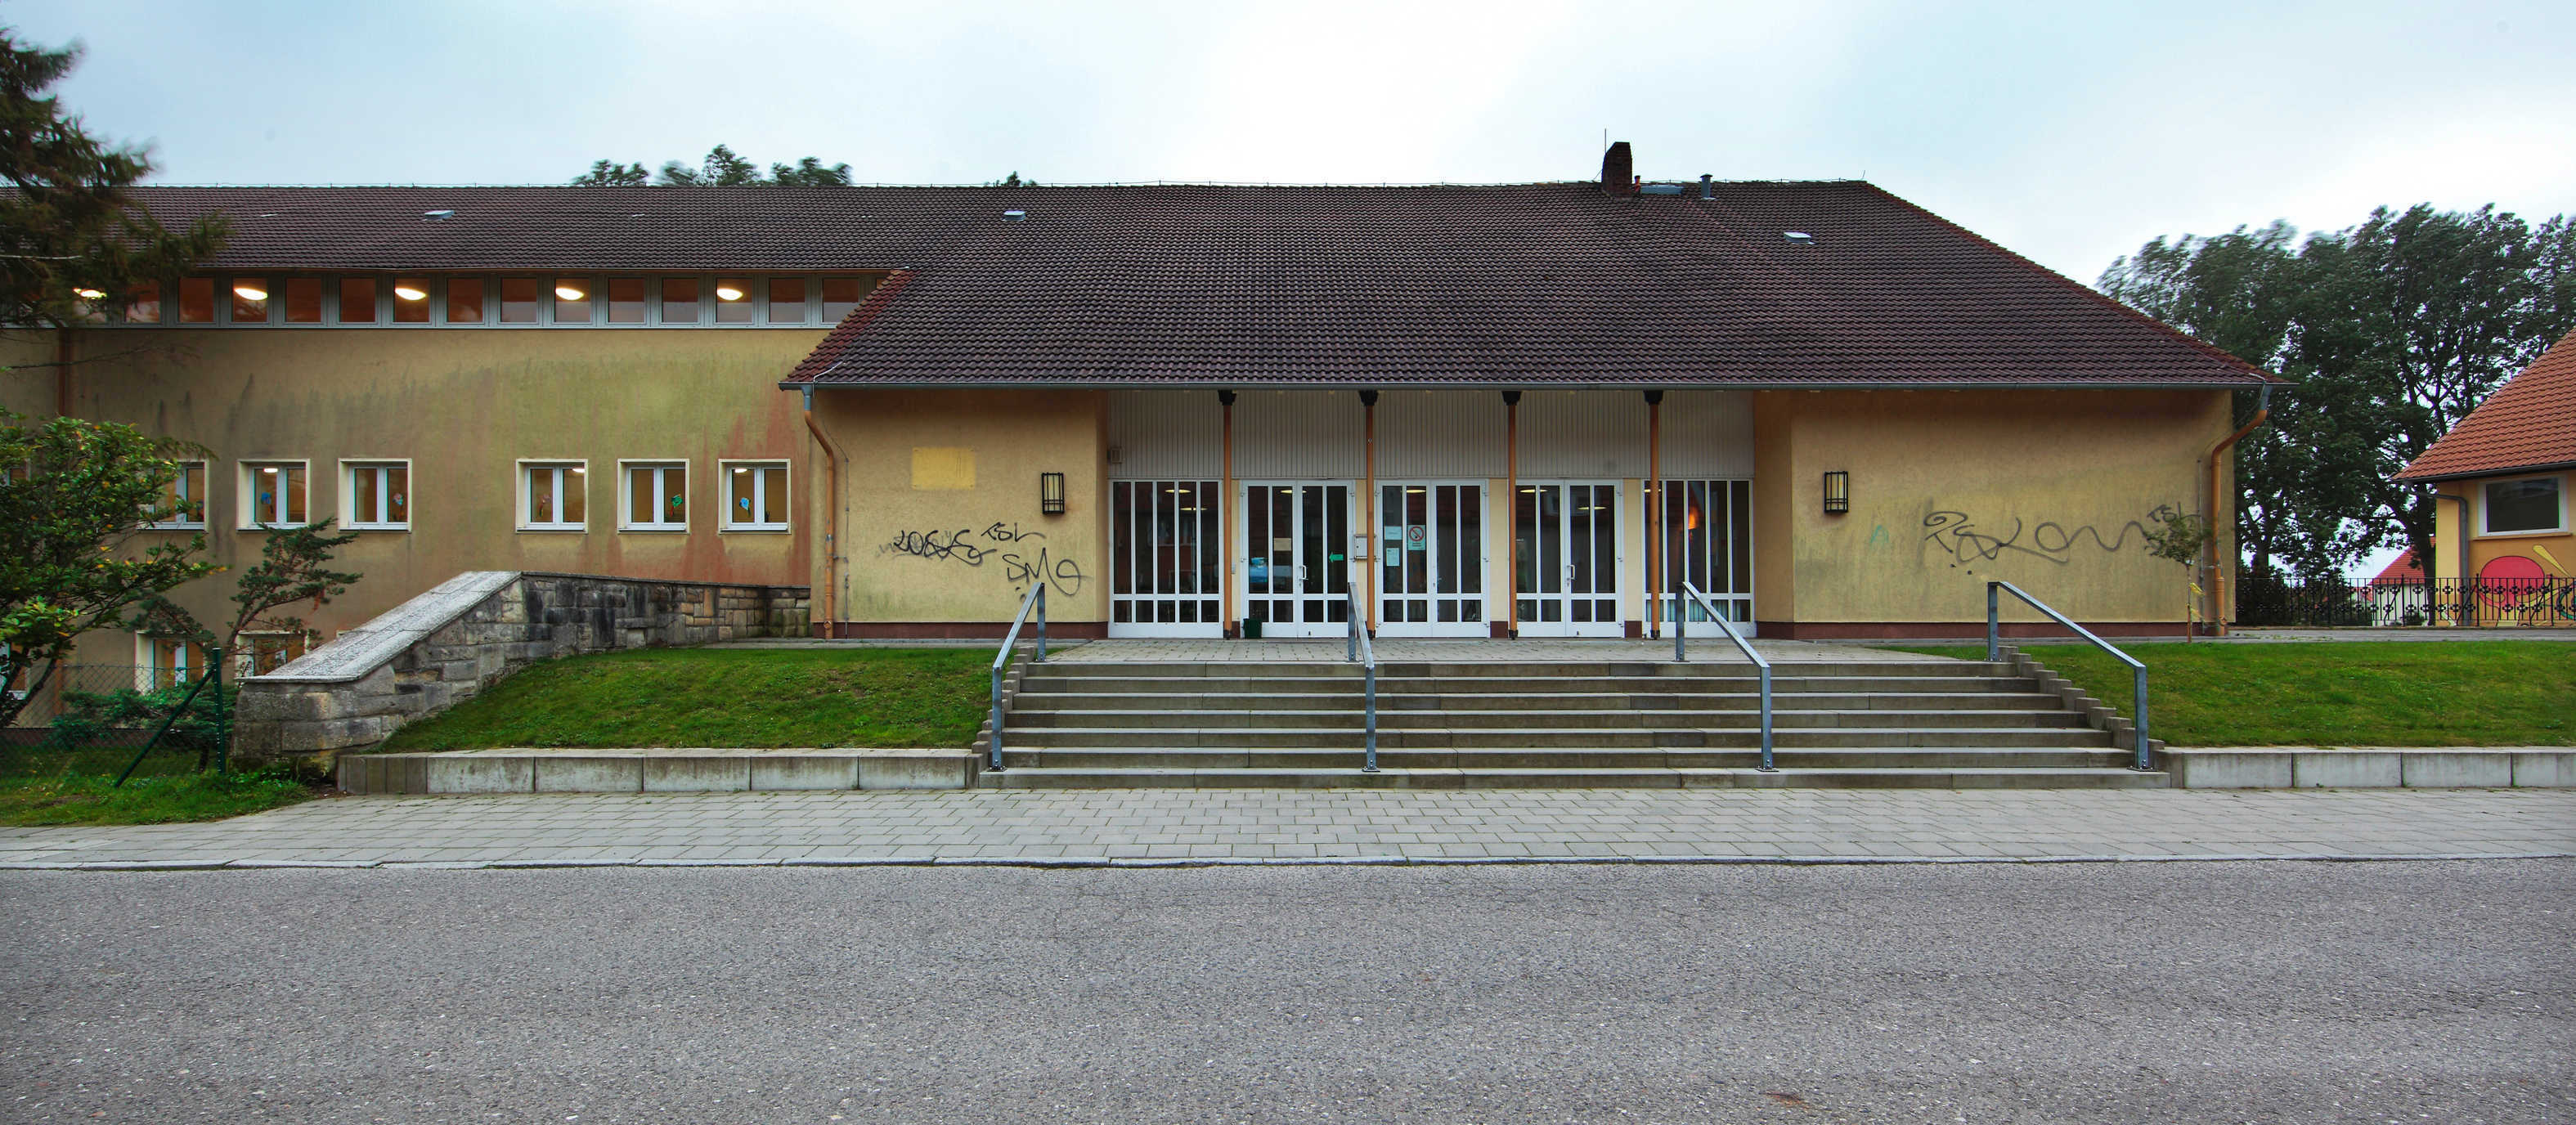 Sassnitz, Landkreis Vorpommern-Rügen, Schulstraße 8, Gymnasium. 